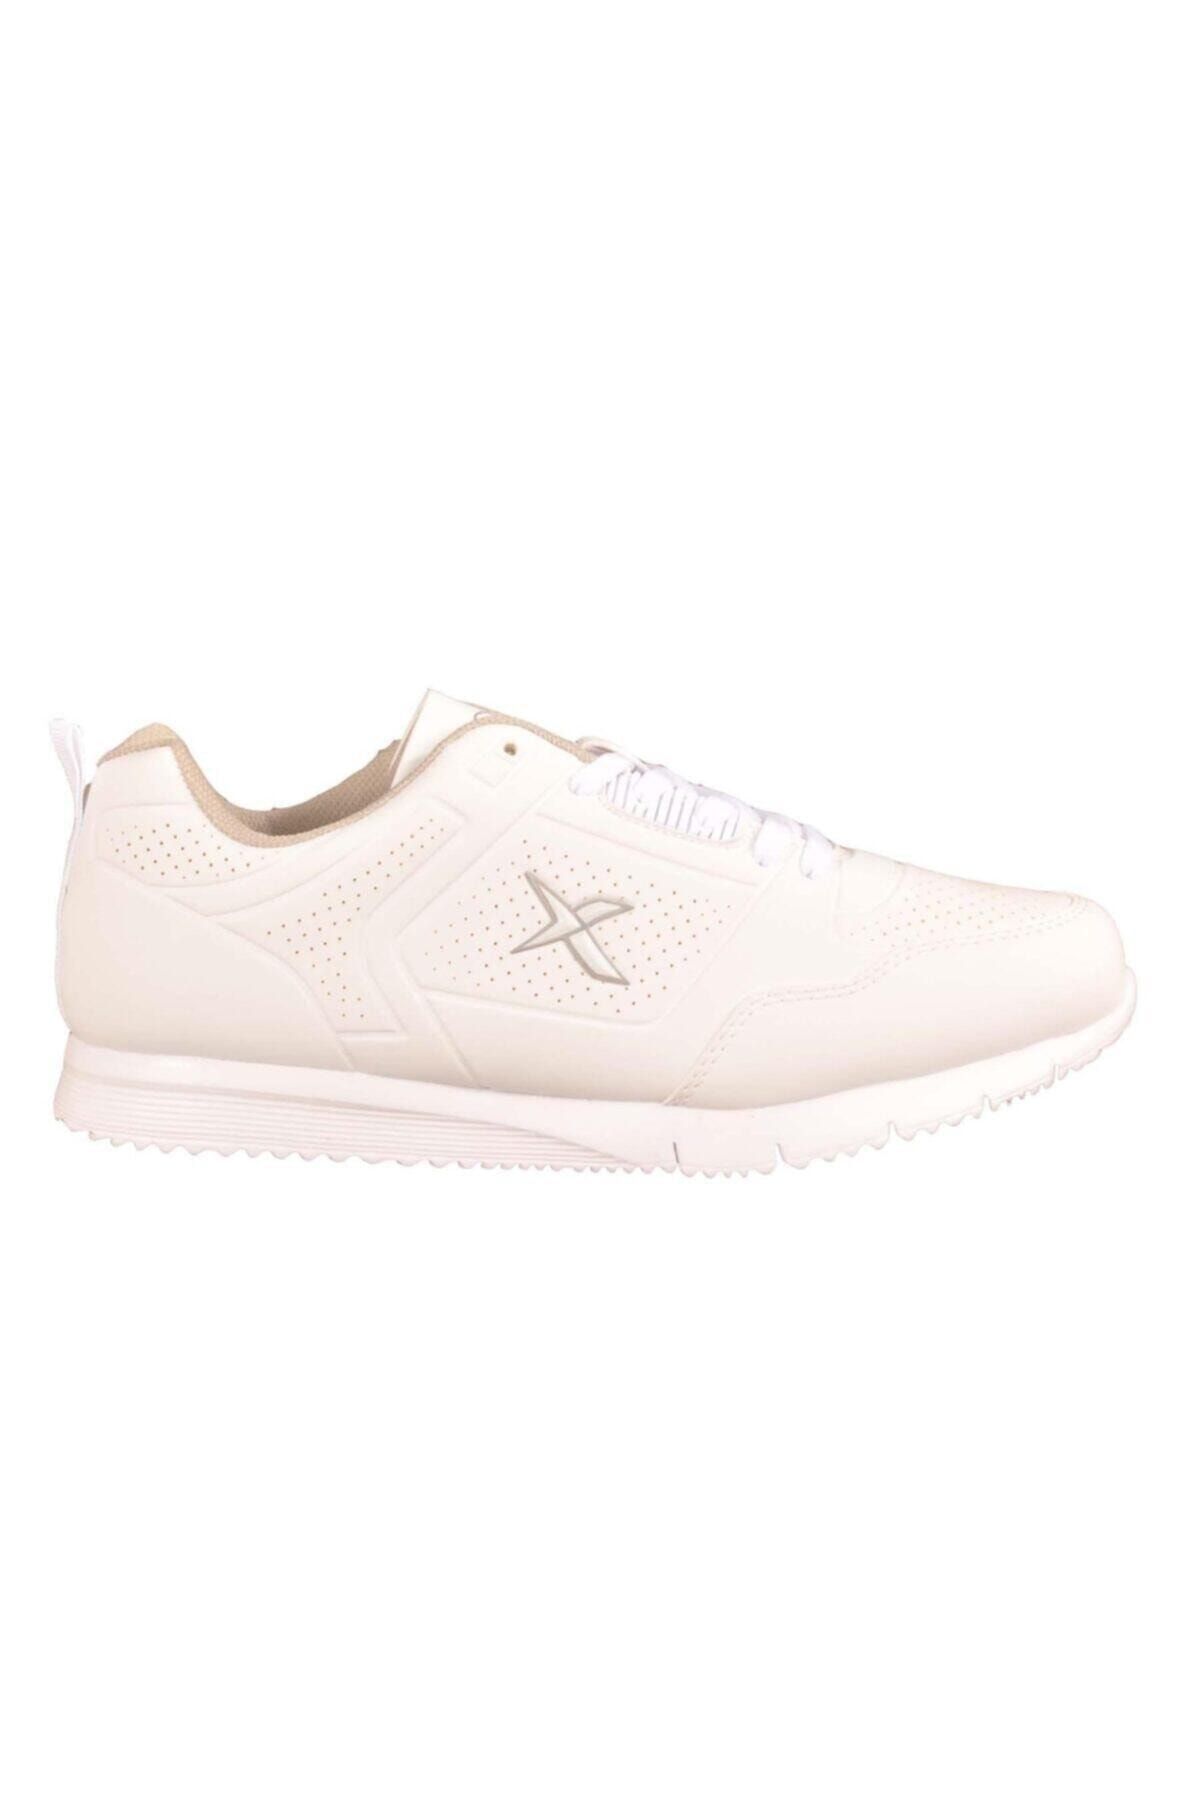 Kinetix LORA W Beyaz Kadın Sneaker Ayakkabı 100302243